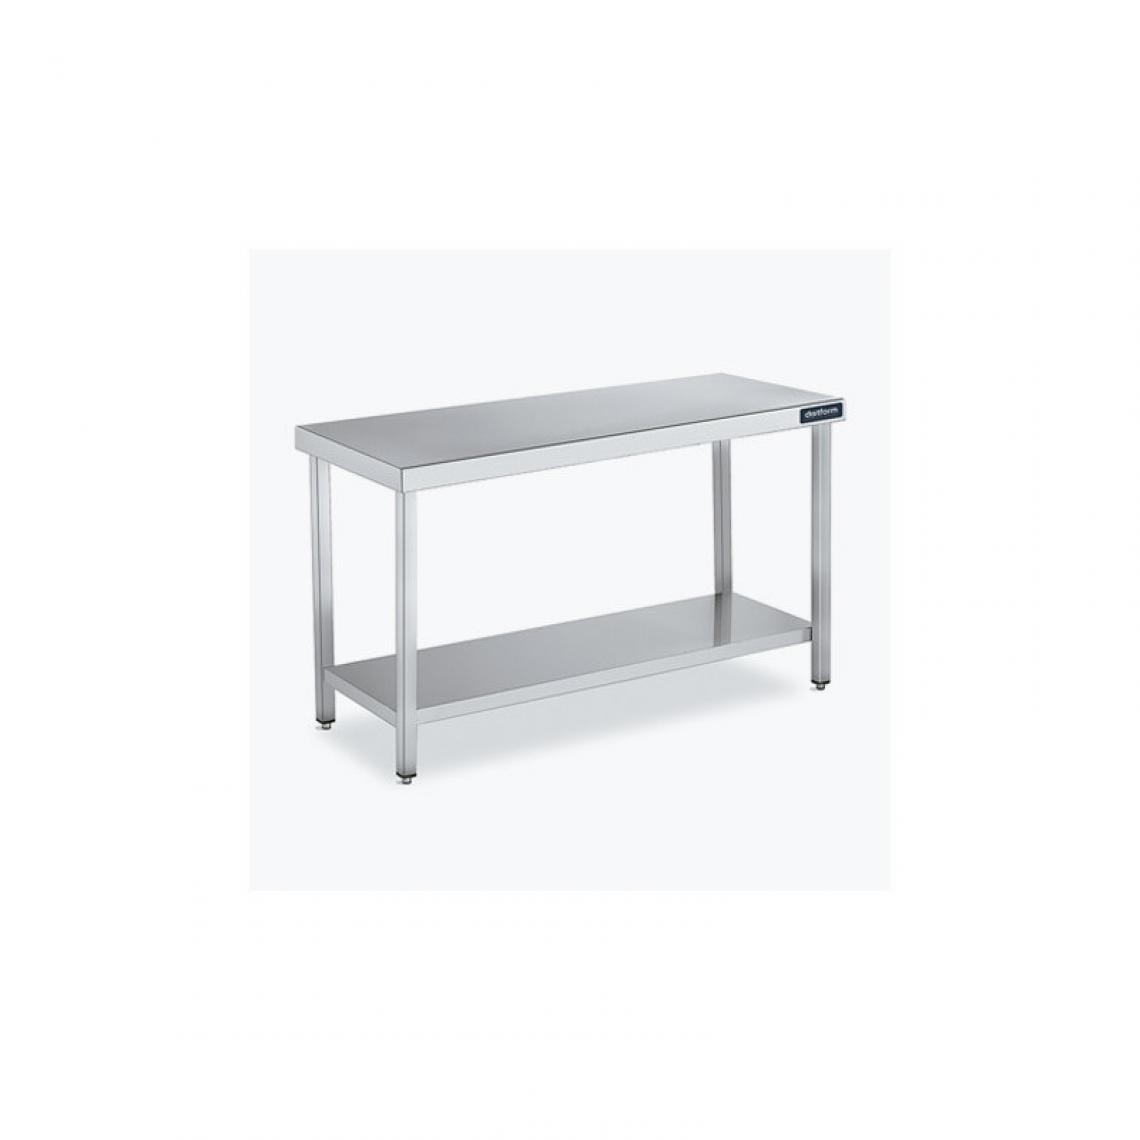 DISTFORM - Table Central 600x550 avec Étagère - Distform - Inox 18/101200x550x850mm - Tables à manger